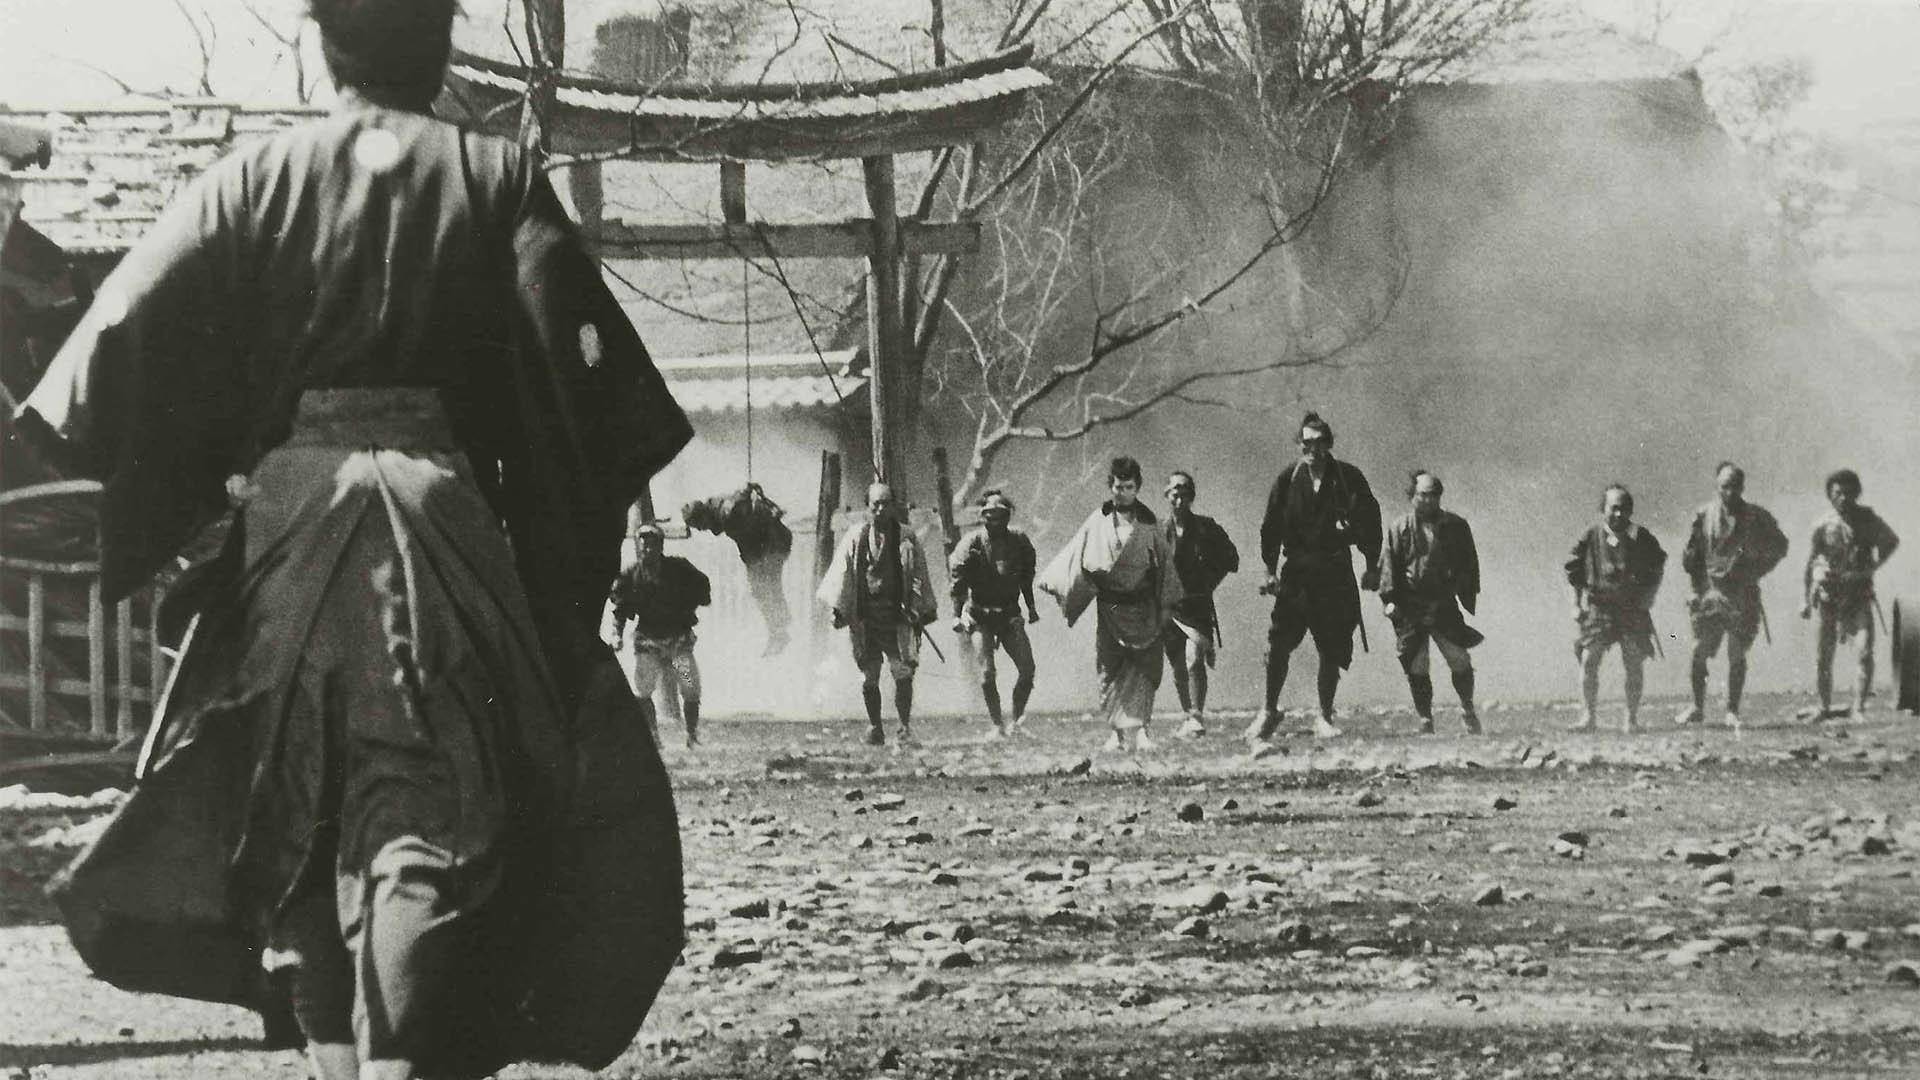 Yojimbo 1961, Akira Kurosawa